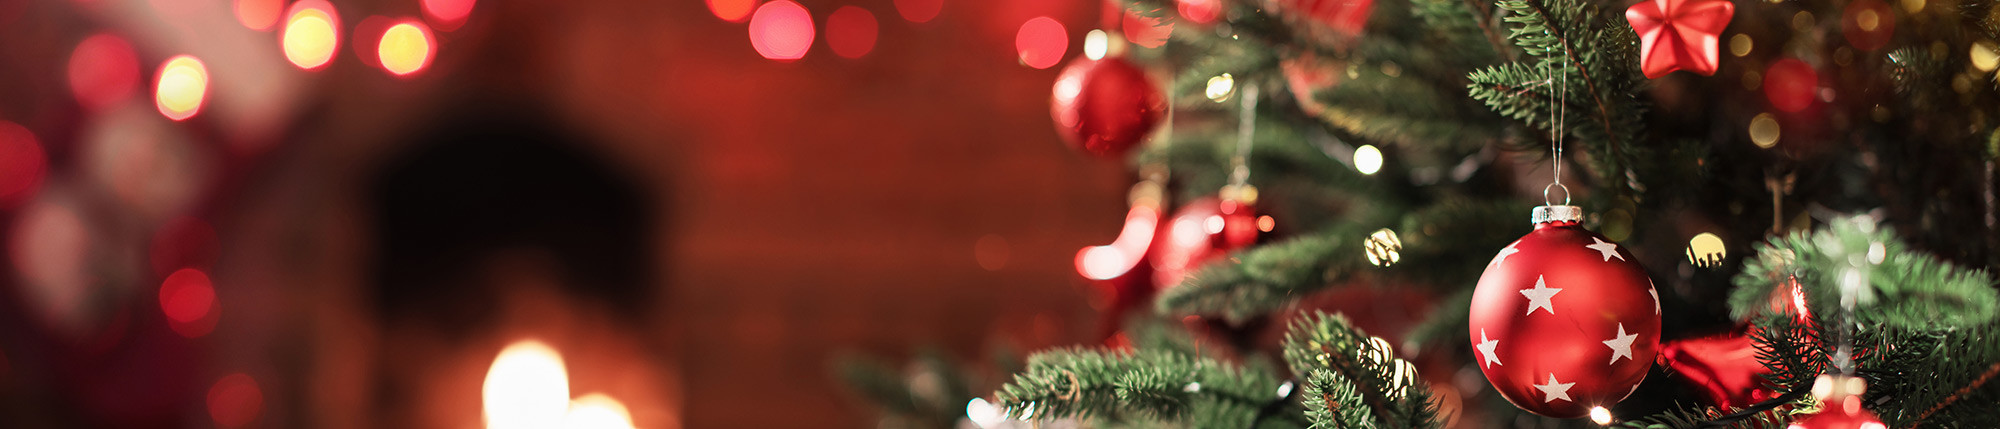 Cestas y Cajas de Regalo - Especial Navidad - ParmaShop.com